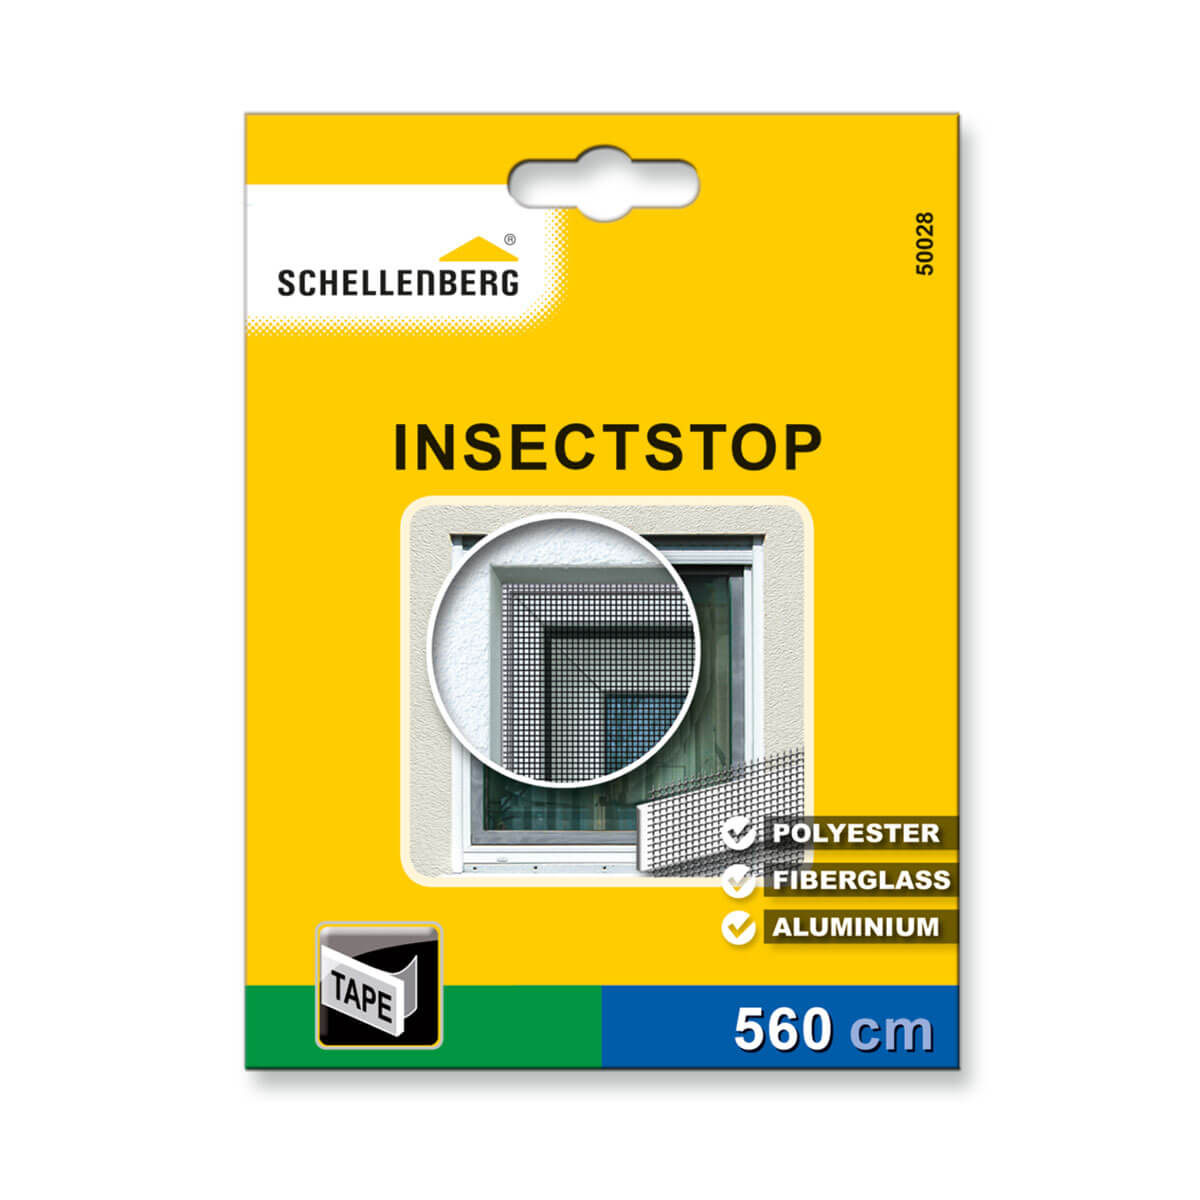 50028-insectstop-tape-schellenberg